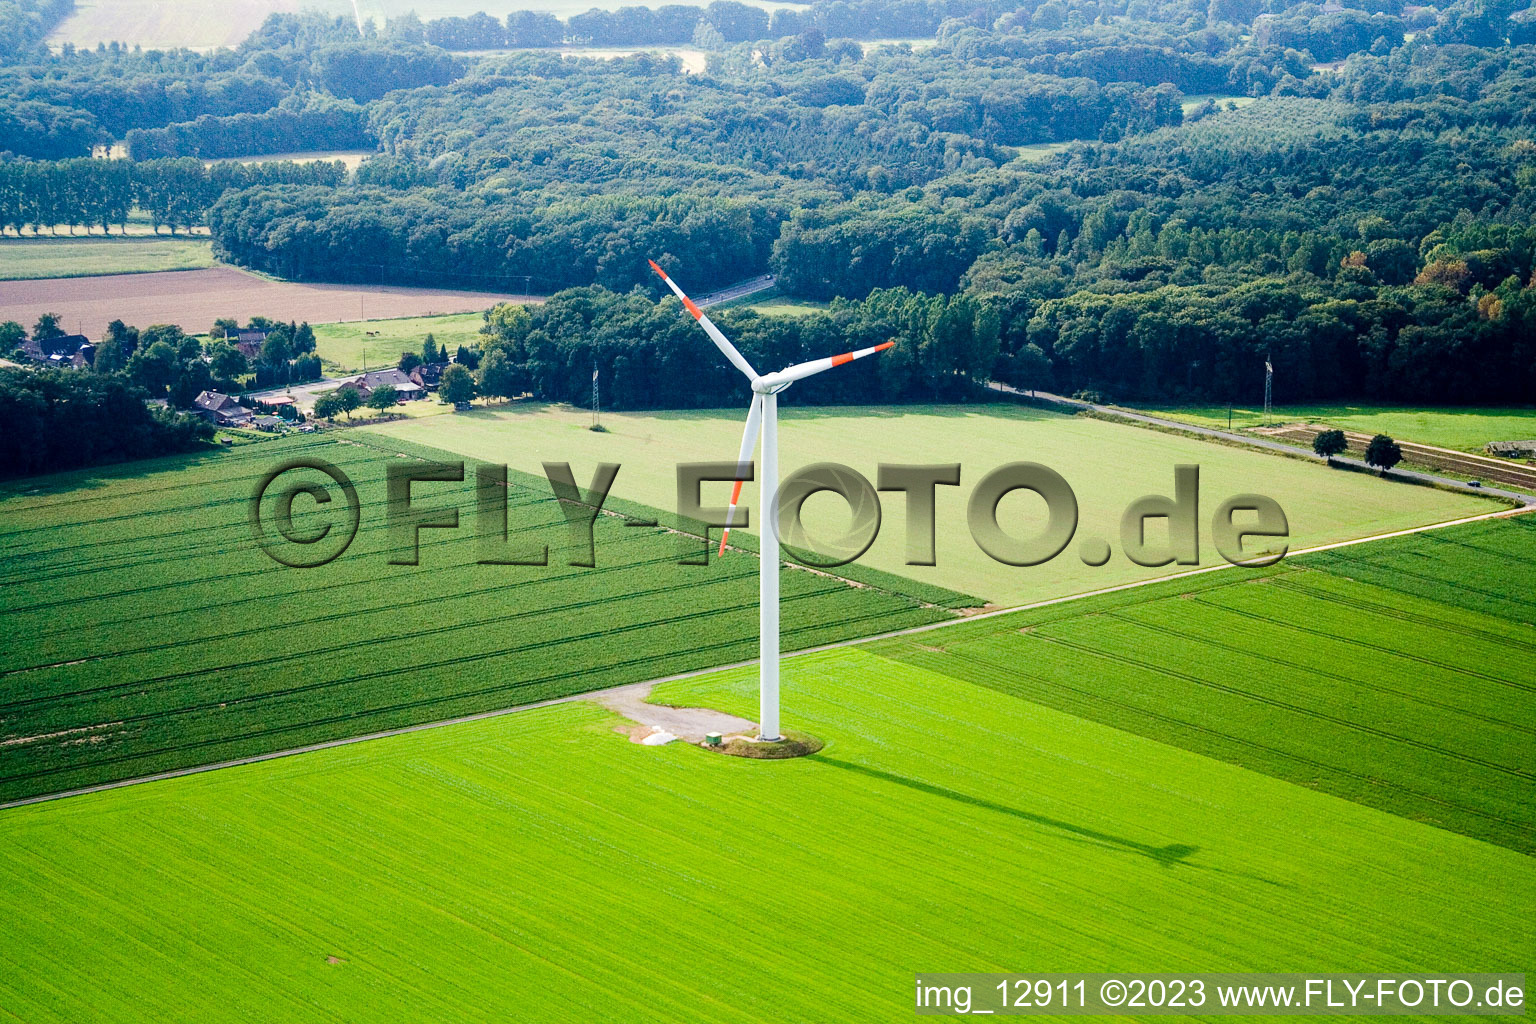 Between Kerken and Limburg in Kerken in the state North Rhine-Westphalia, Germany from the plane